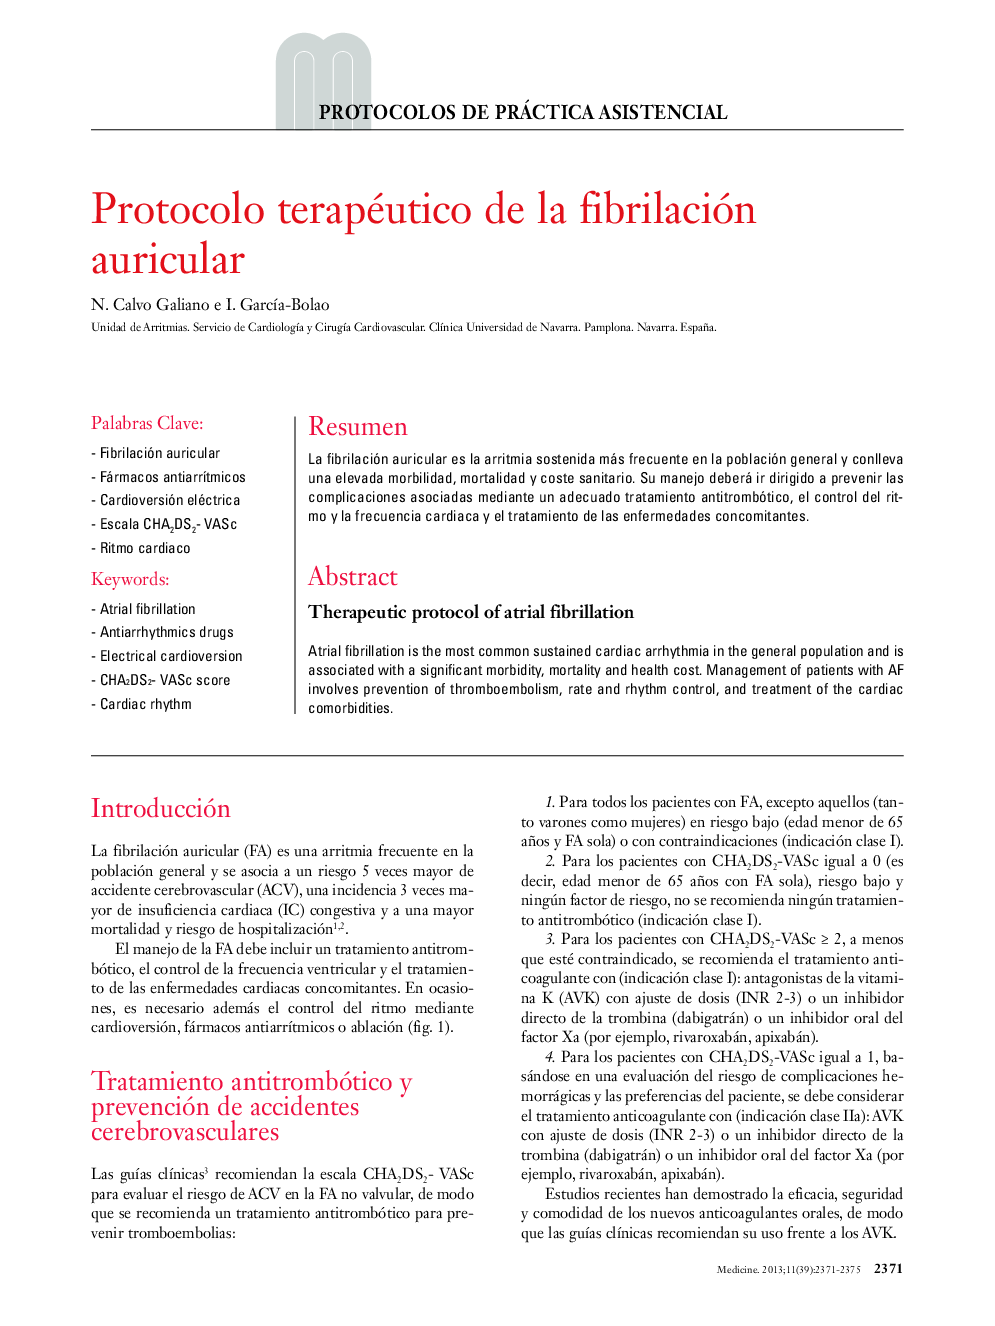 Protocolo terapéutico de la fibrilación auricular